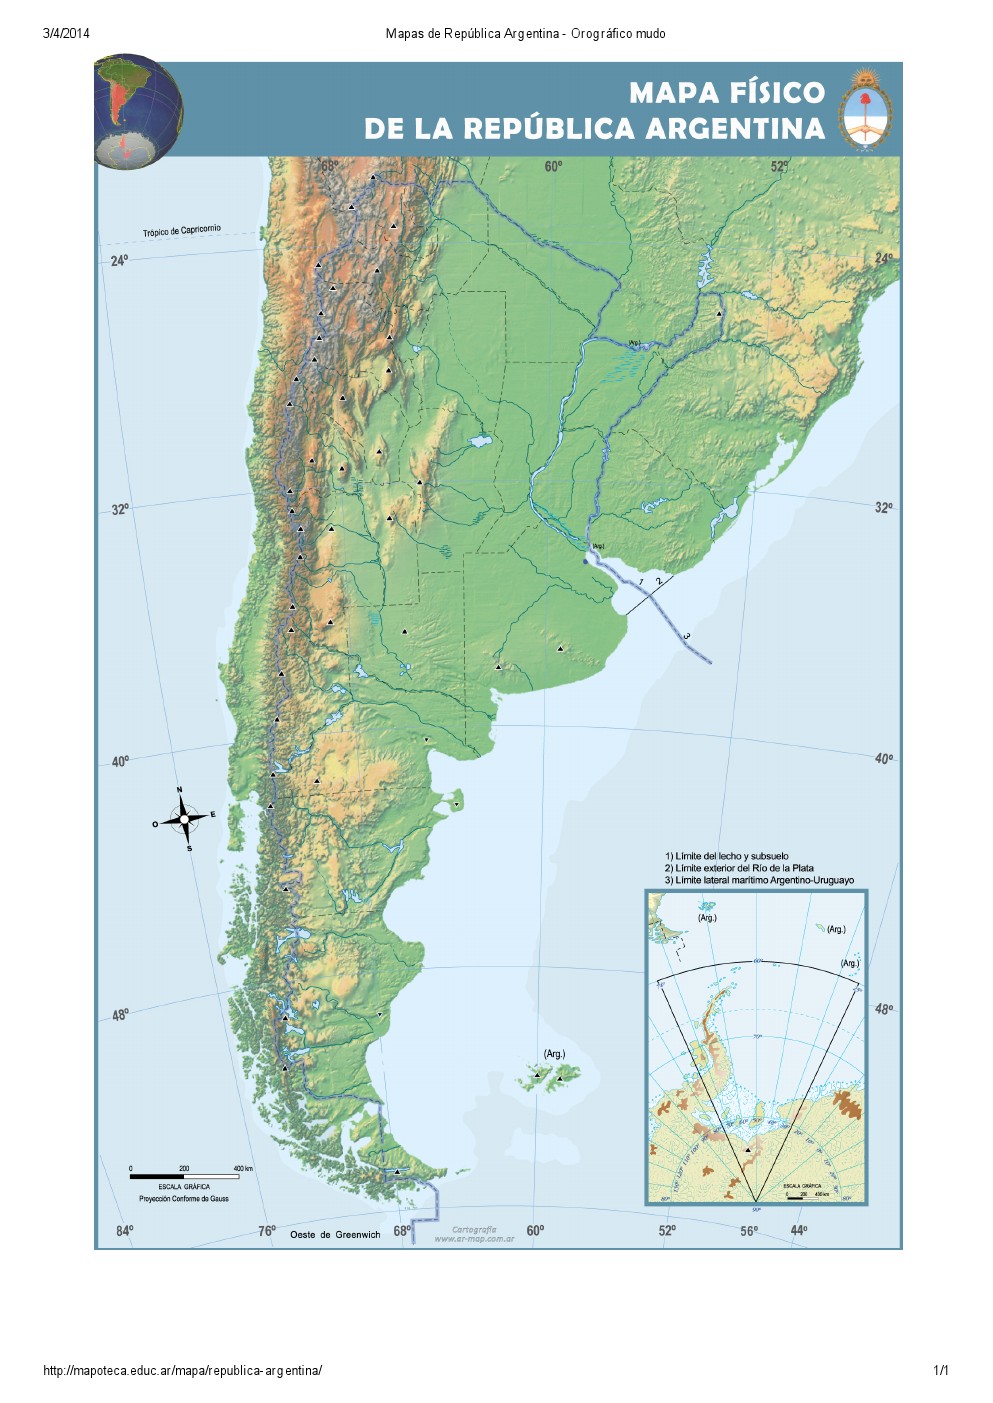 Mapa orográfico mudo de Argentina. Mapoteca de Educ.ar